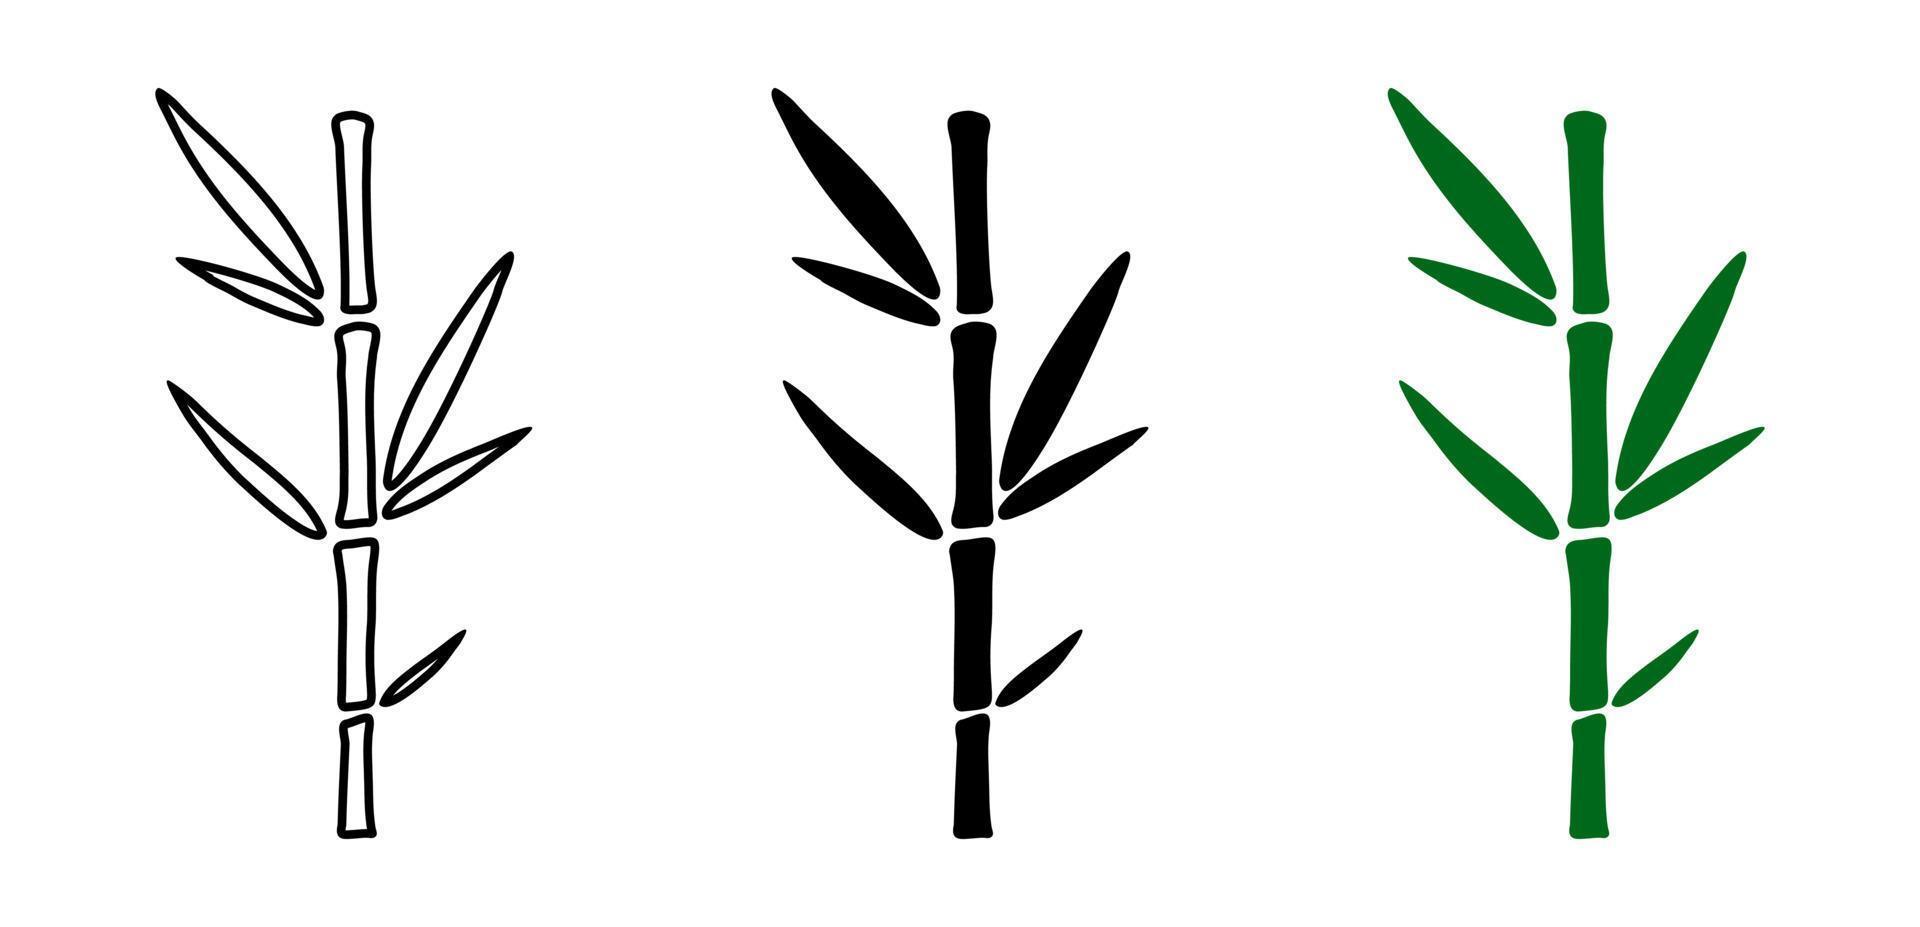 uppsättning handritade bambuväxter. svart kontur, siluett och massiv bambu i minimalistisk design. doodle stil vektorillustration vektor